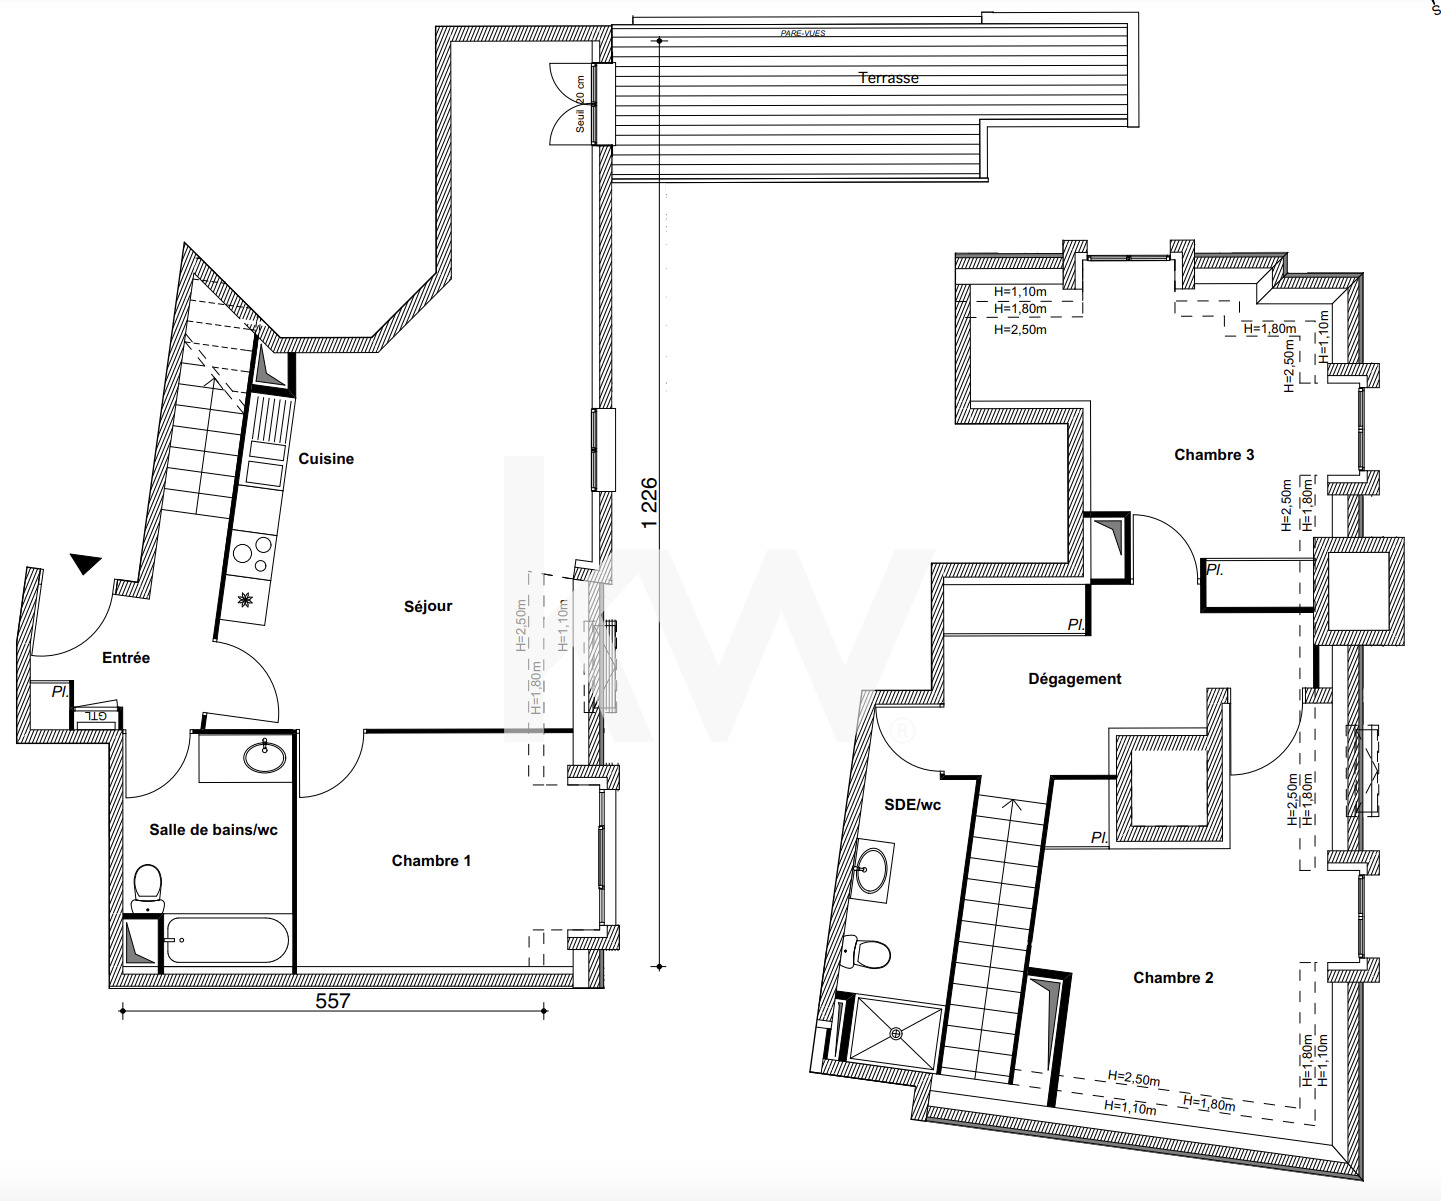 VENTE d'un appartement 4 pièces (99 m²) au BLANC MESNIL (1/3)